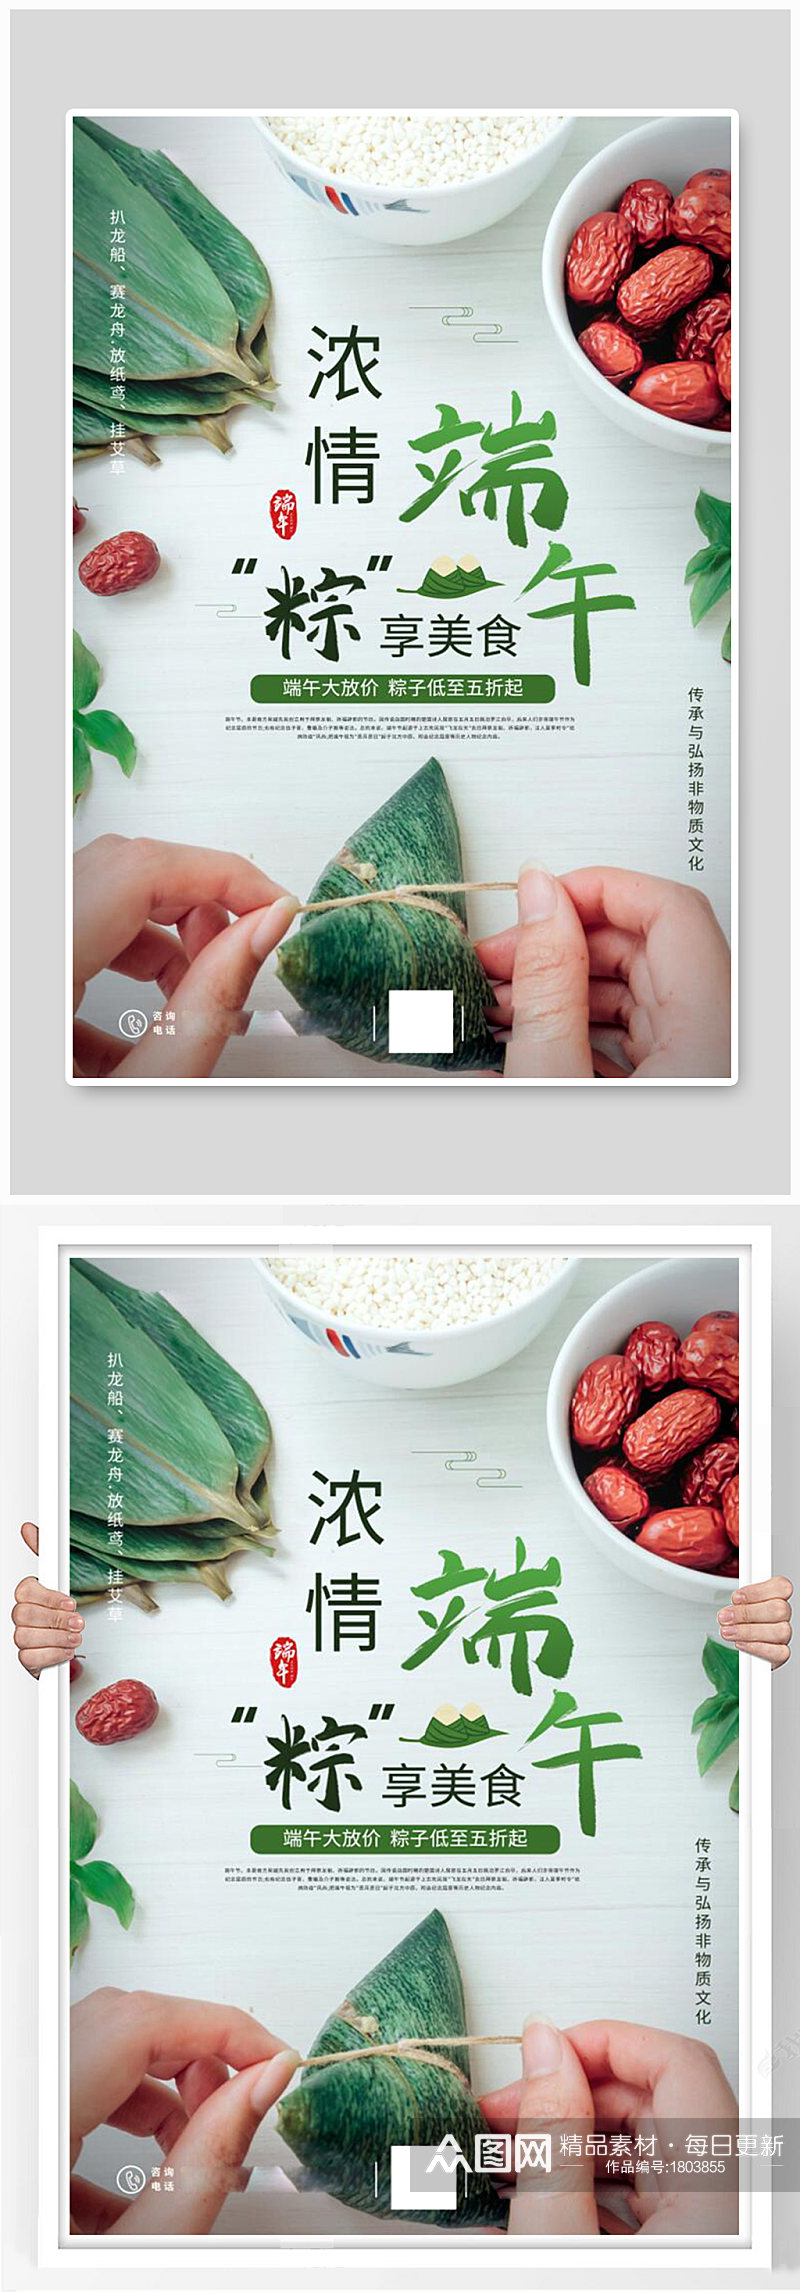 端午节包粽子绿色节日海报素材